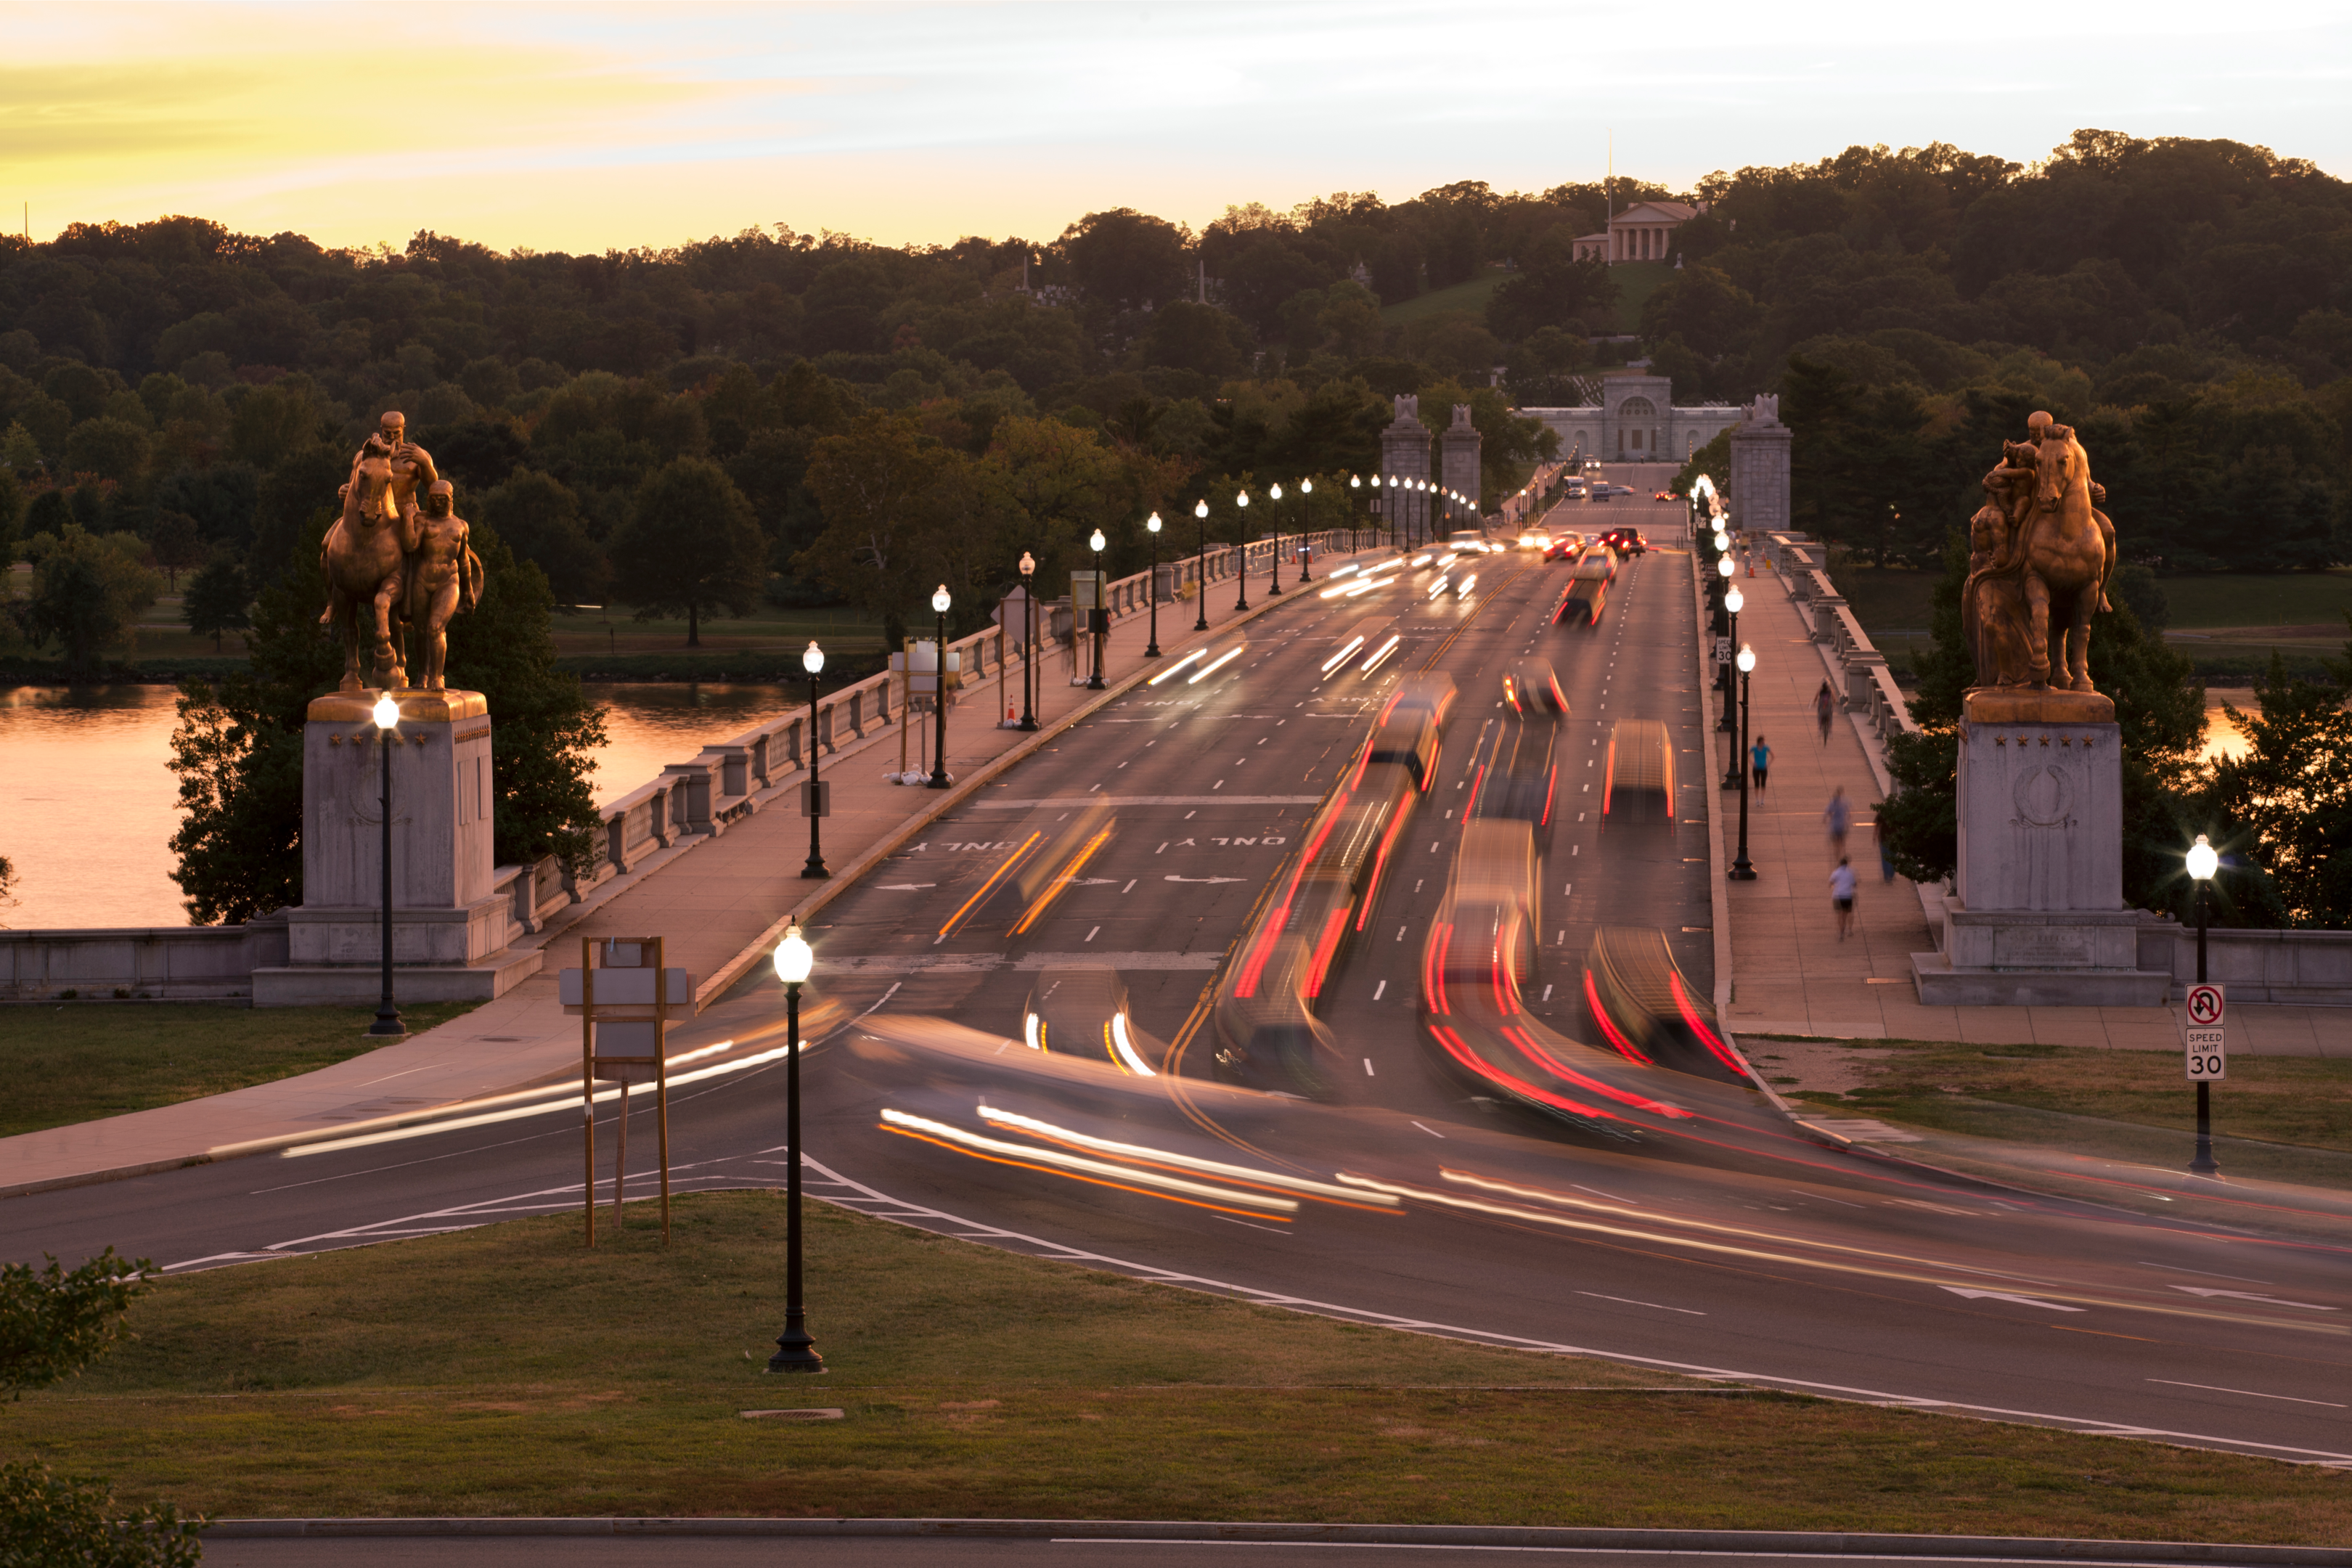 Arlington Memorial Bridge seen from the Lincoln Memorial at sunset.